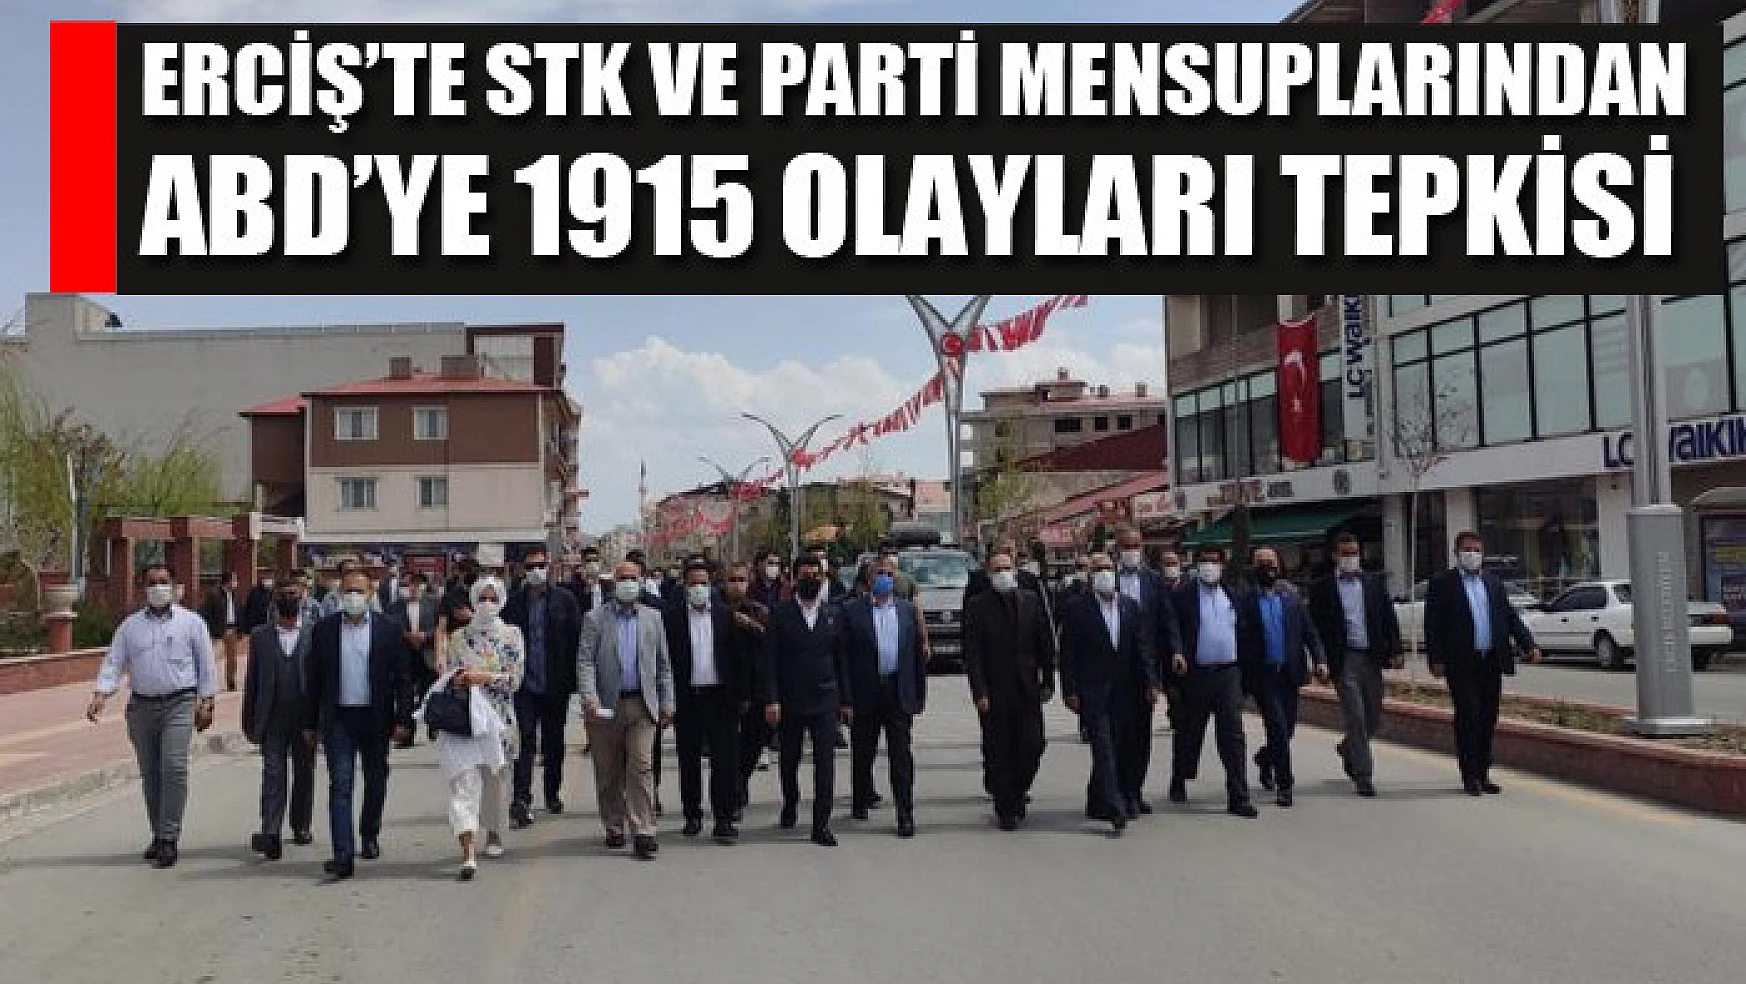 Erciş'te STK ve parti mensuplarından ABD'ye 1915 olayları tepkisi